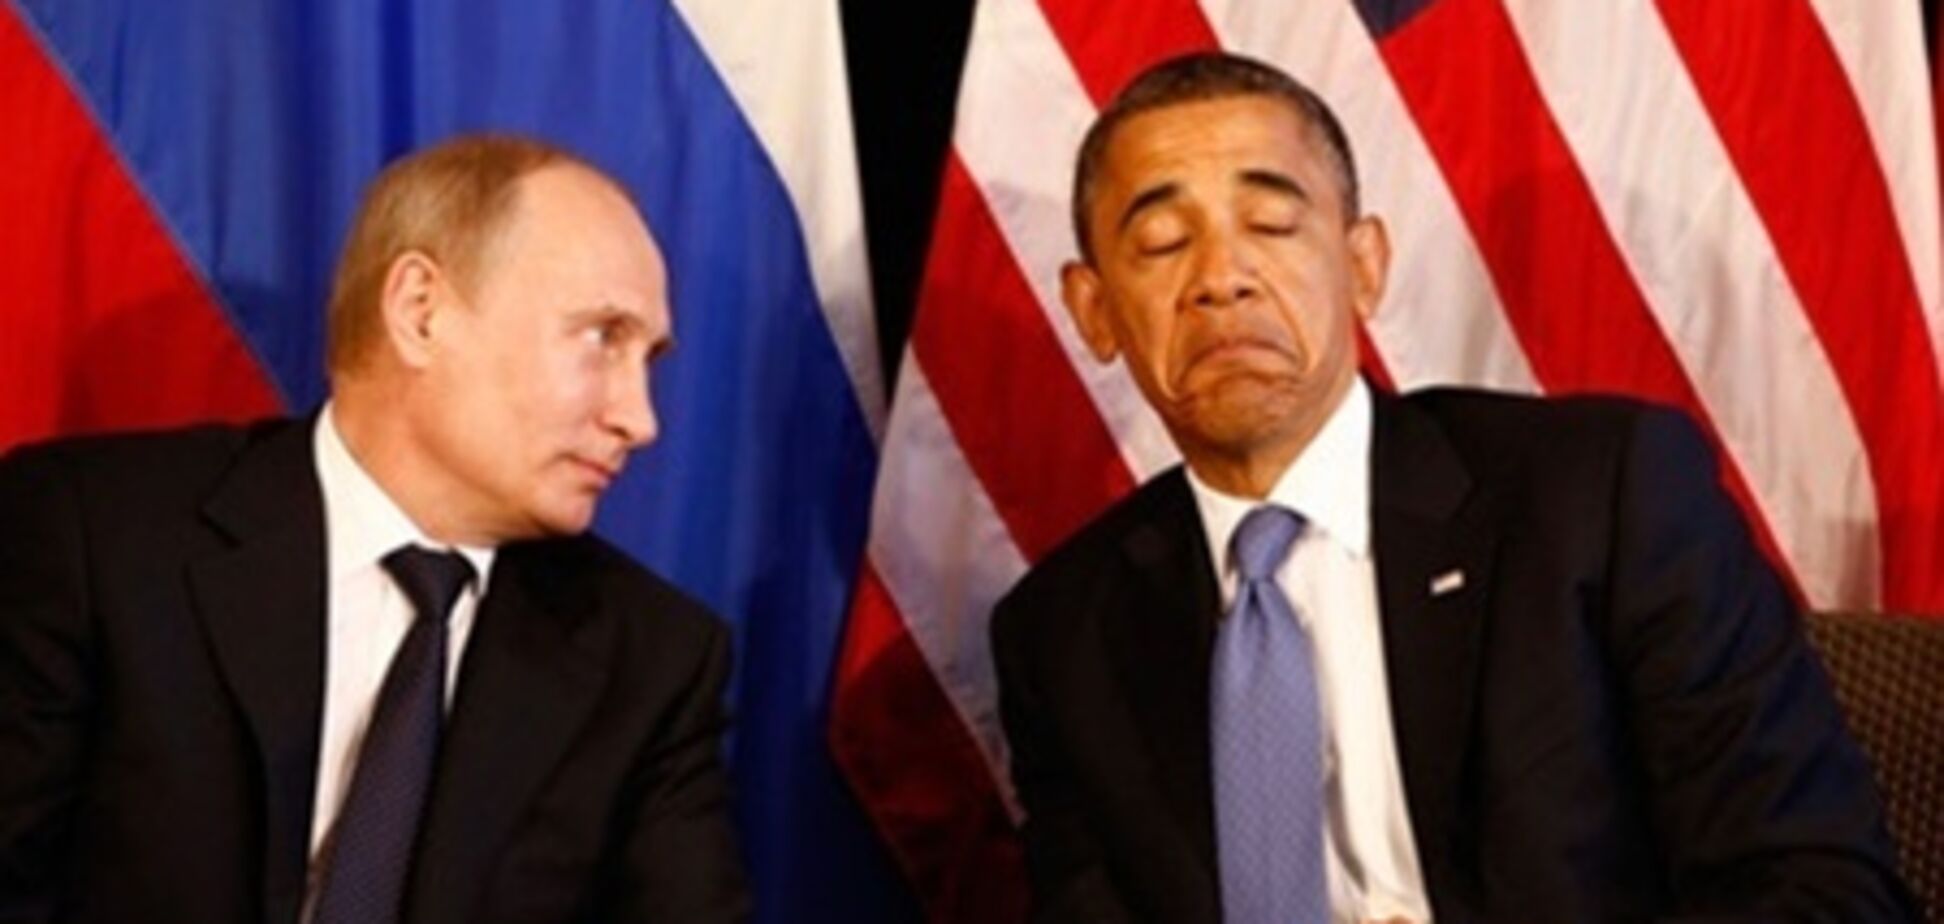 Обама отметил хорошую физическую форму Путина